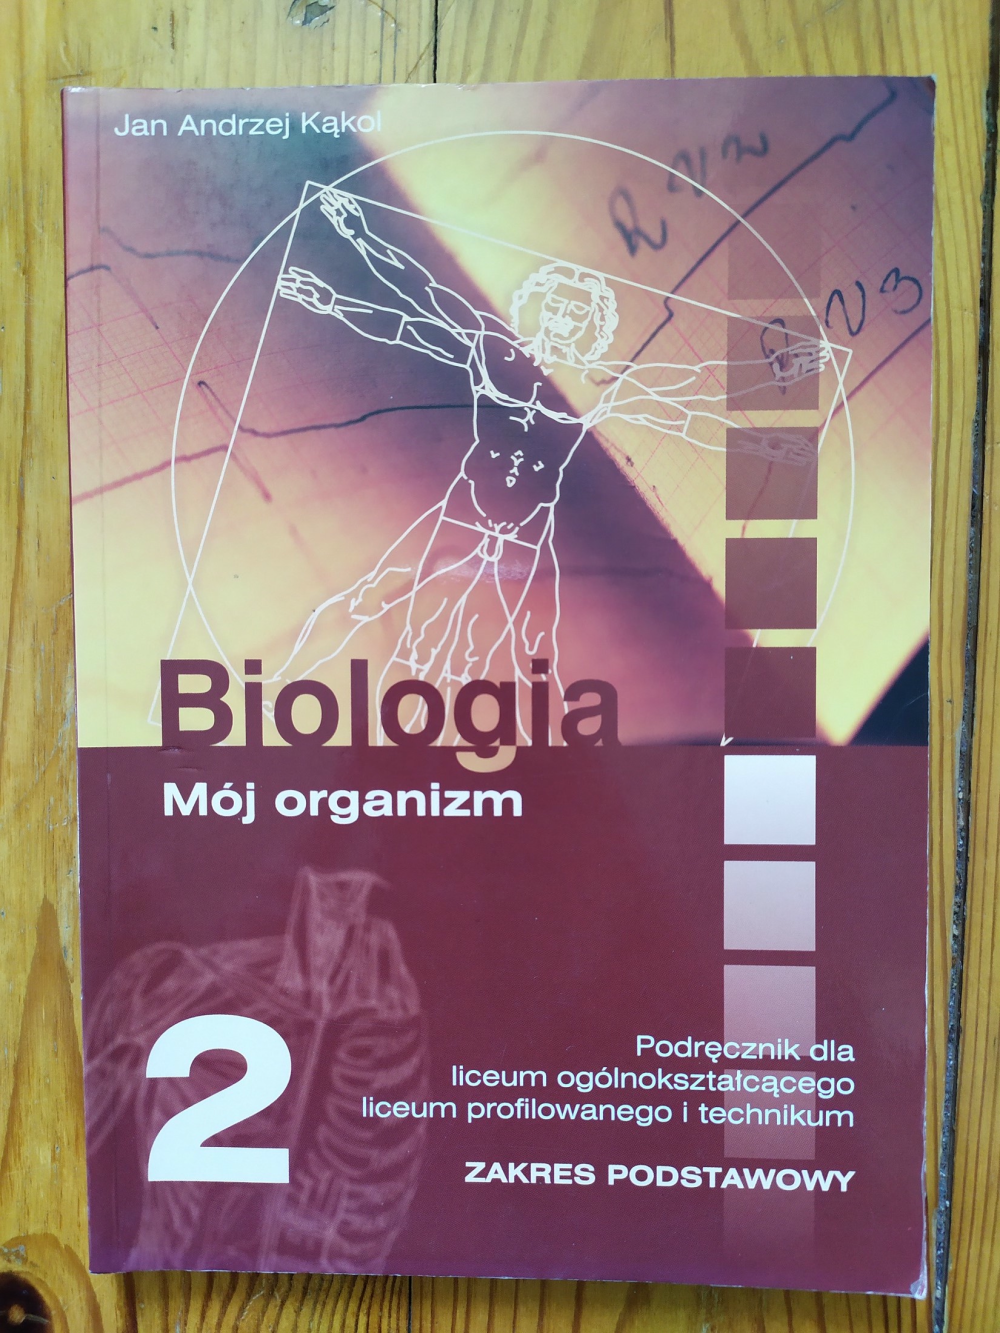 Podręcznik szkolny liceum podstawowy biologia mój organizm 